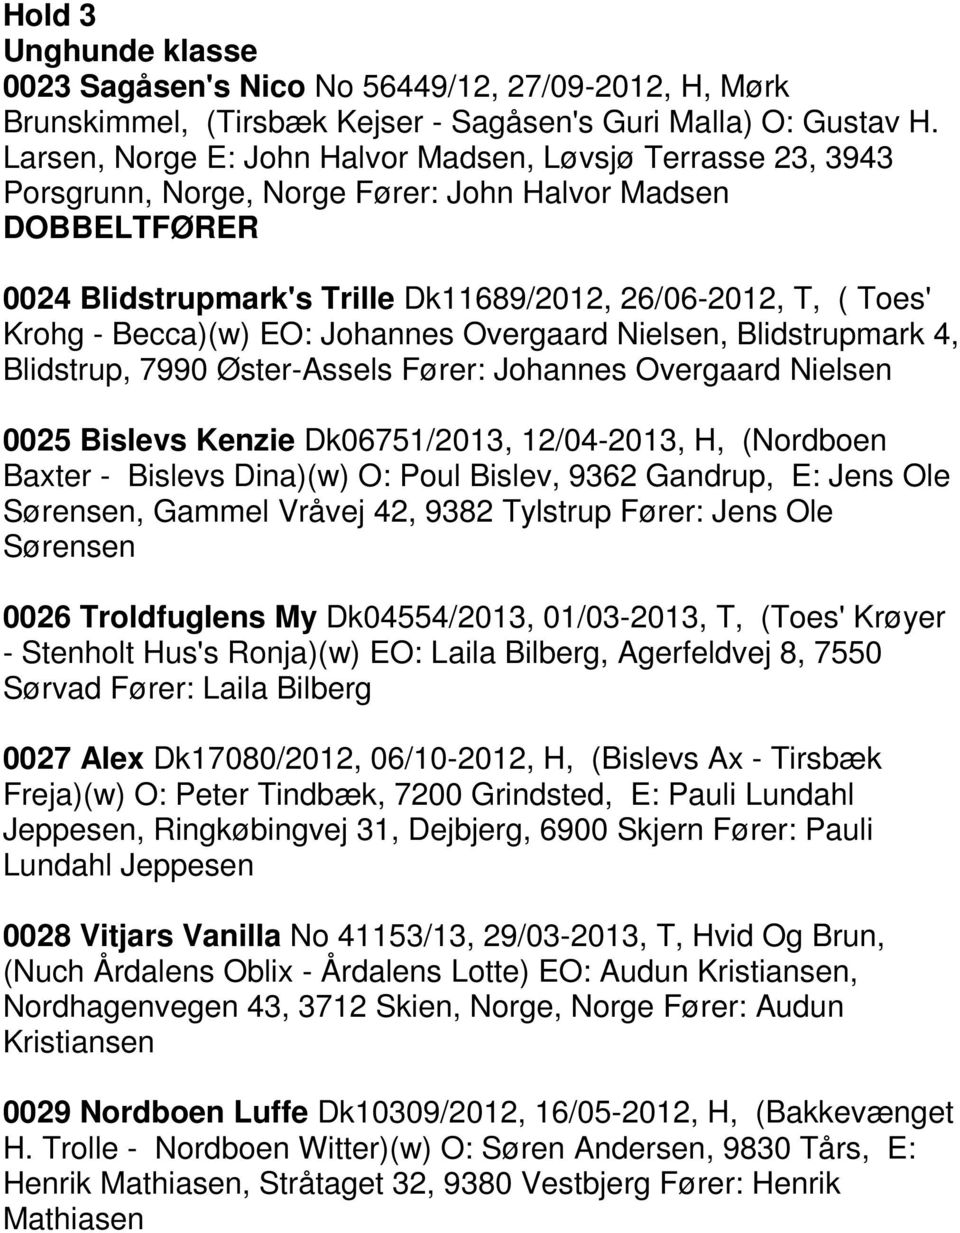 Becca)(w) EO: Johannes Overgaard Nielsen, Blidstrupmark 4, Blidstrup, 7990 Øster-Assels Fører: Johannes Overgaard Nielsen 0025 Bislevs Kenzie Dk06751/2013, 12/04-2013, H, (Nordboen Baxter - Bislevs